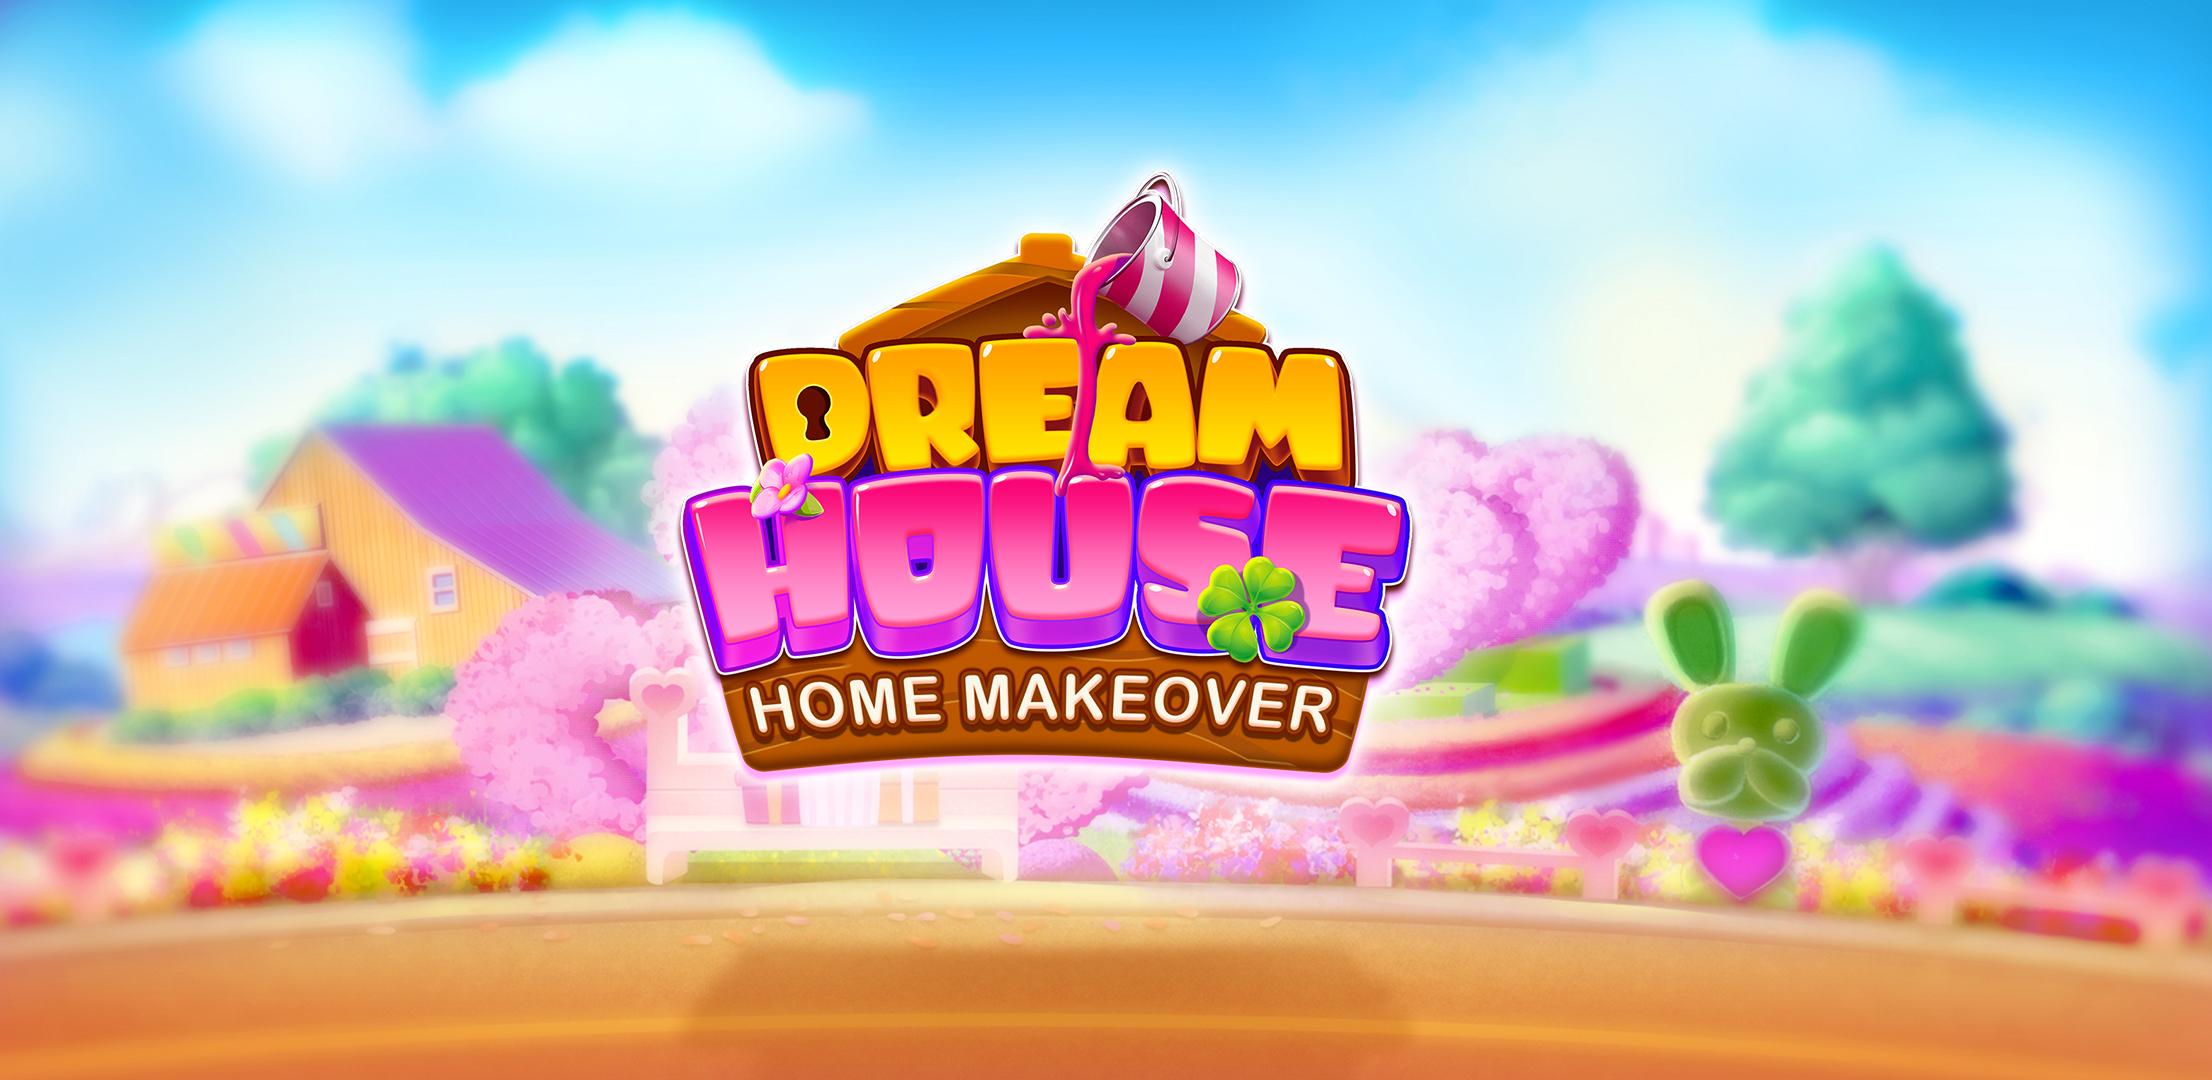 Dream House Home Makeover 1.0.60 Screenshot 12